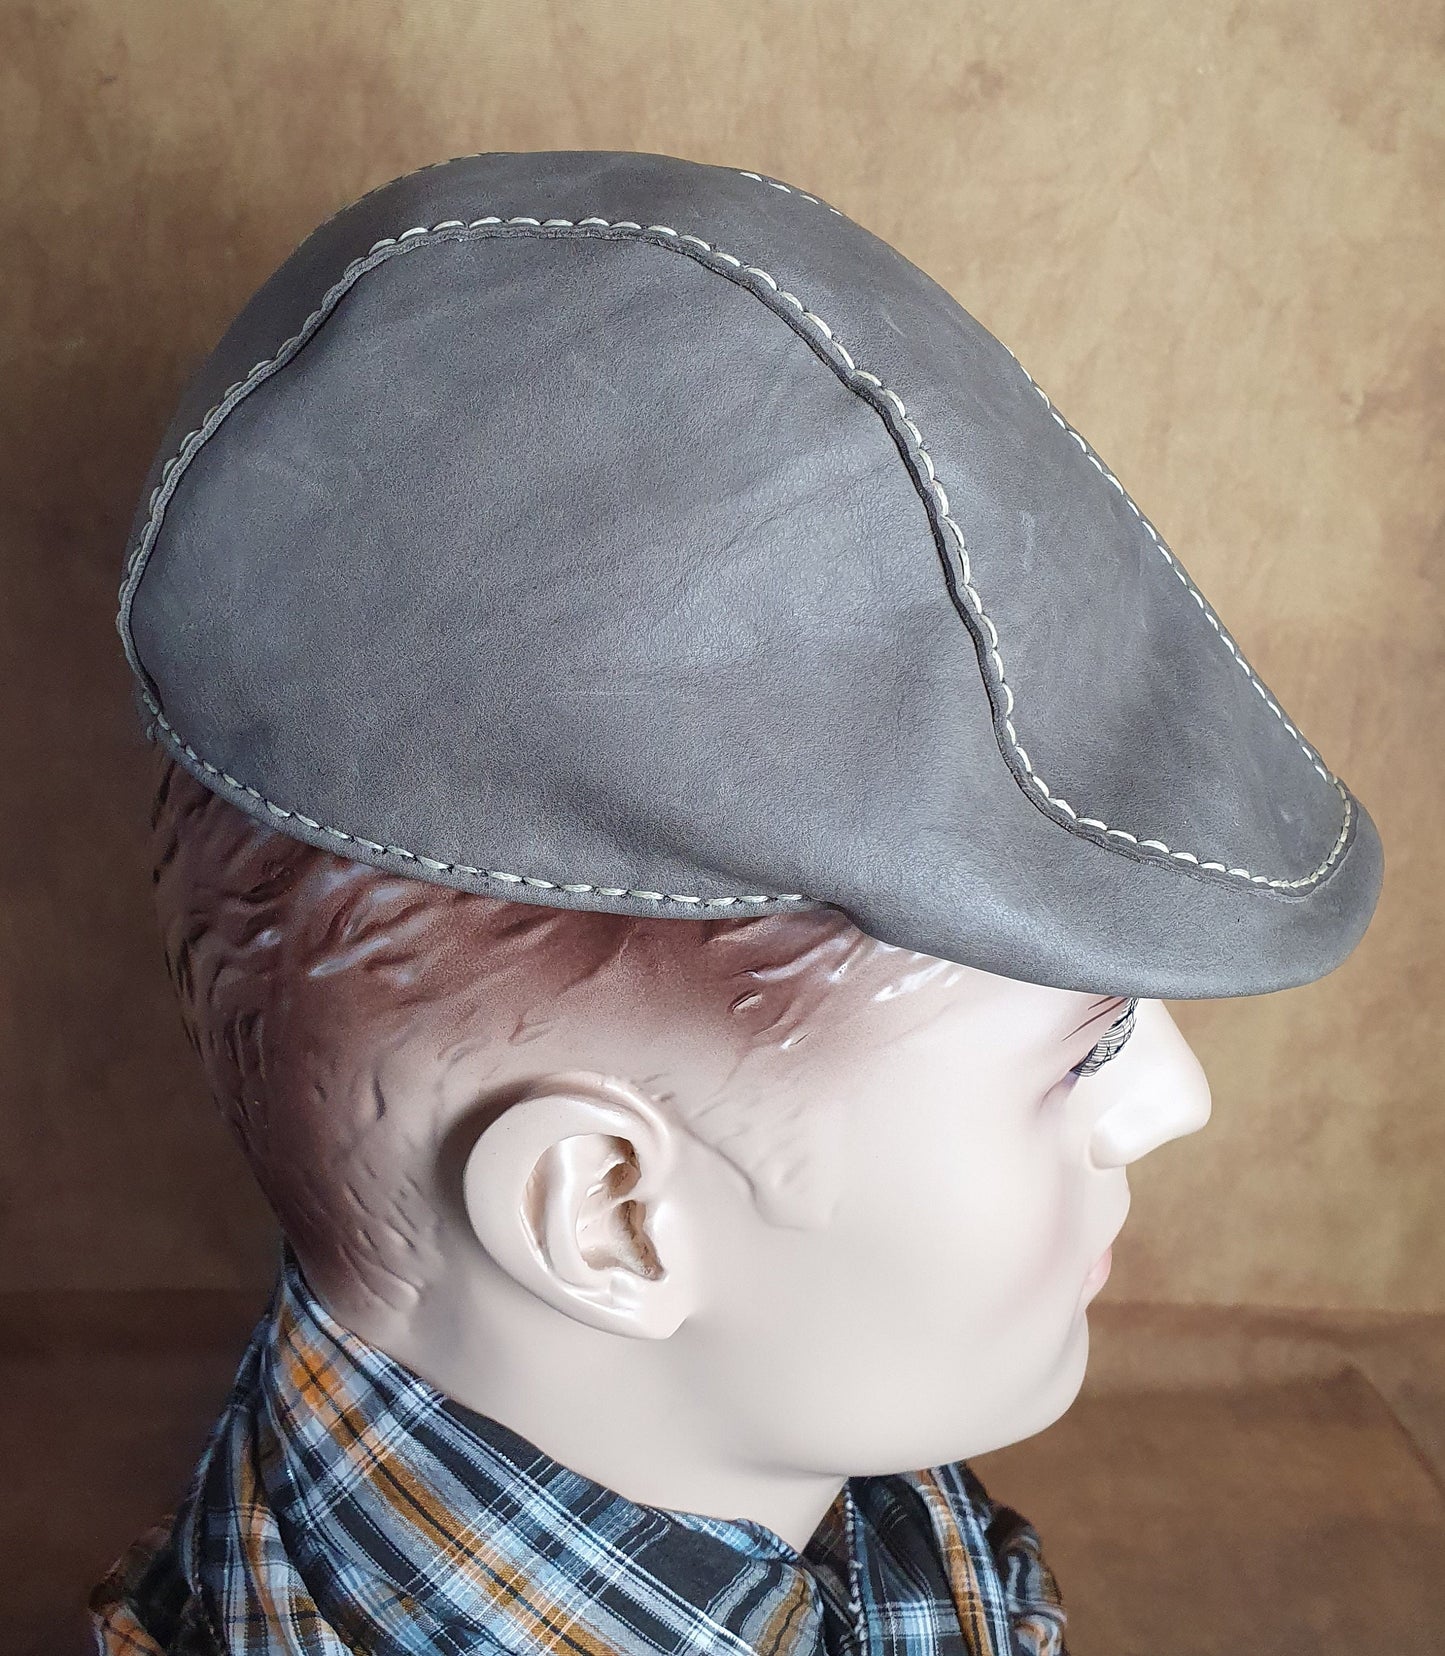 Handgemaakte Lierys Vintage Modderbruine Kafsleer Flat Cap, stijlvolle pet, natuurlijk leer - Unisex hoed